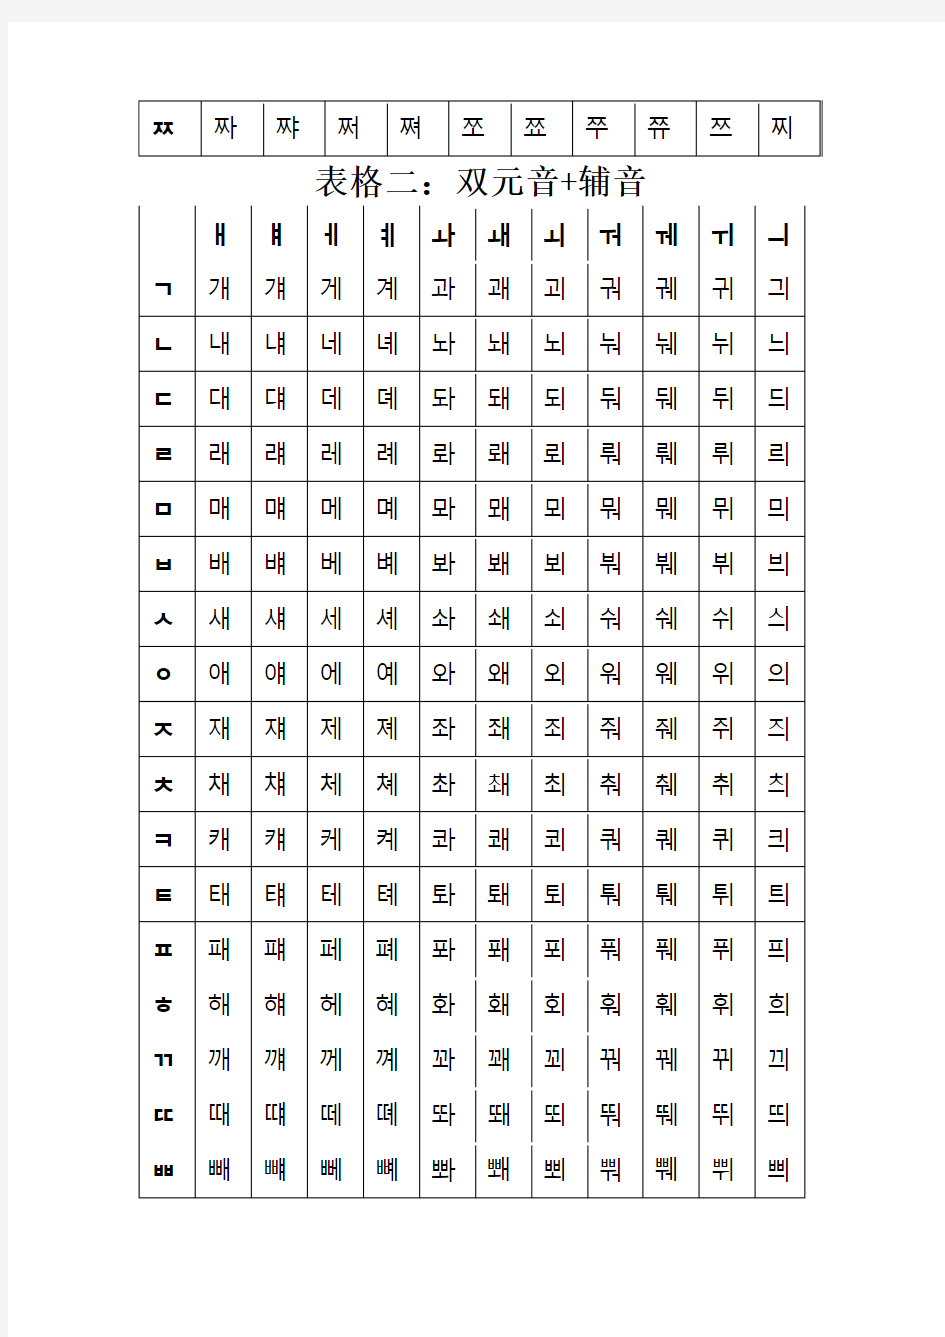 韩语字母表及发音规则